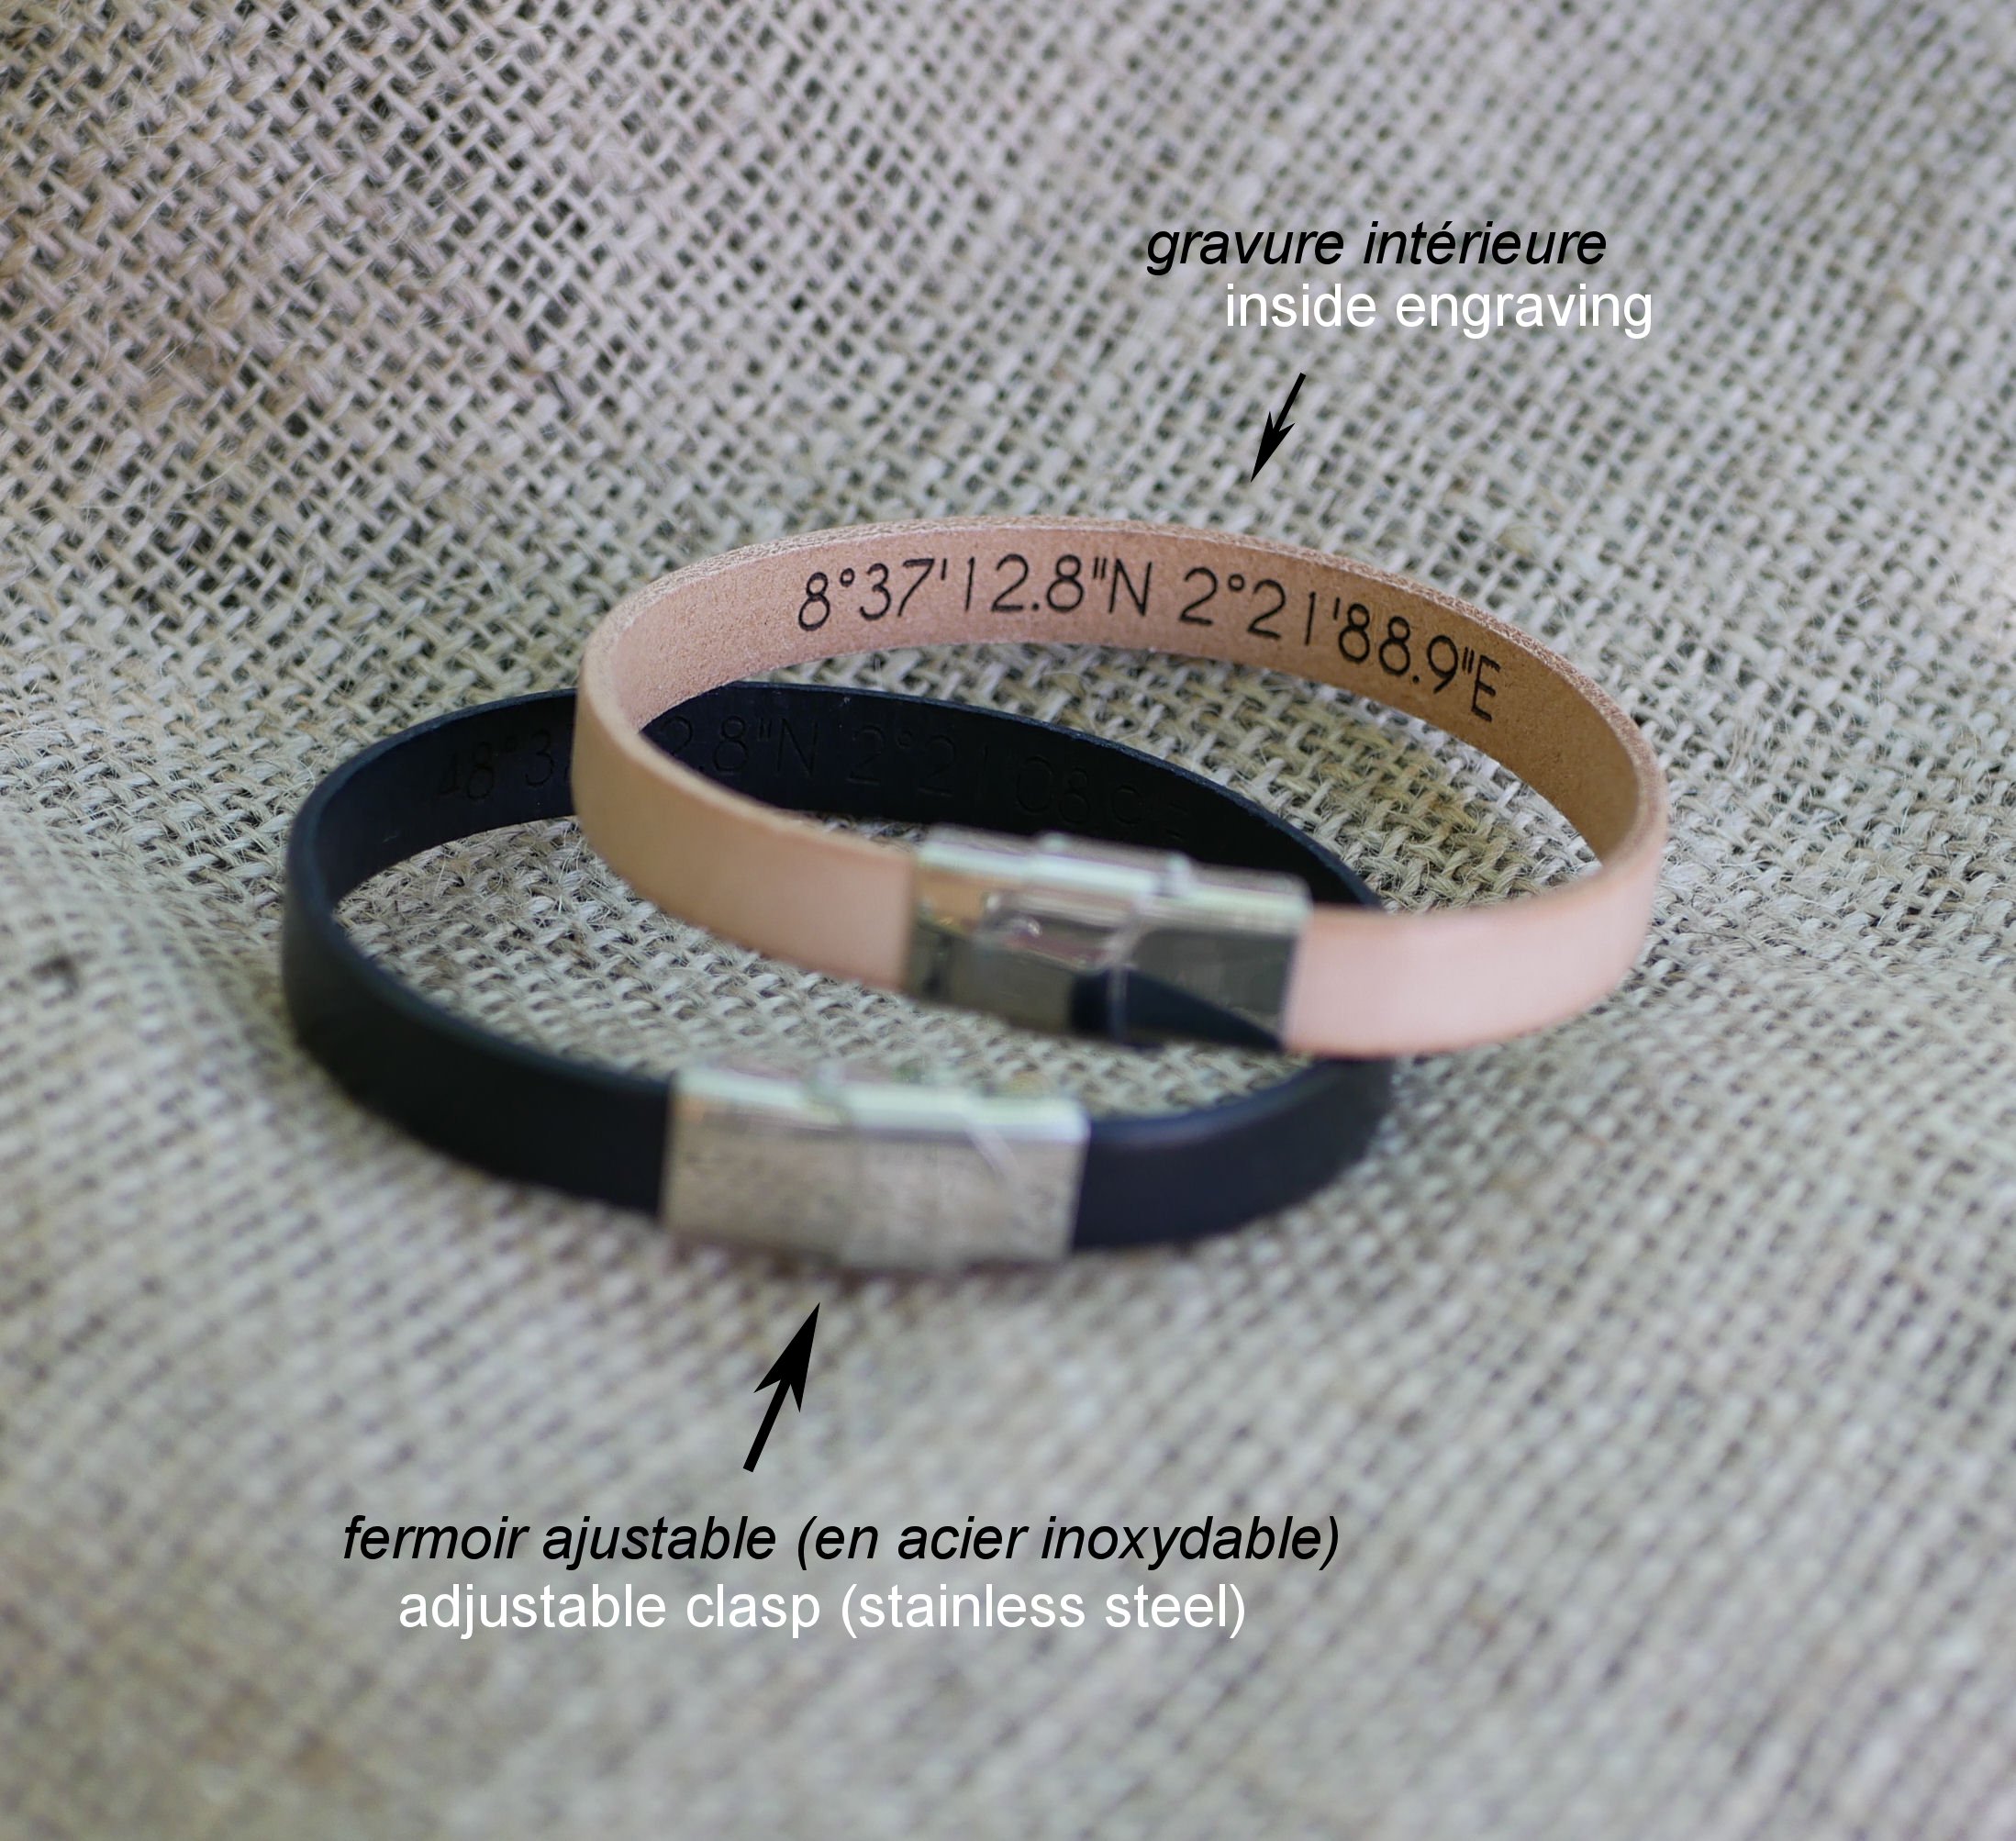 Geschenk für Paare: 2 personalisierte Lederarmbänder durch Gravur 